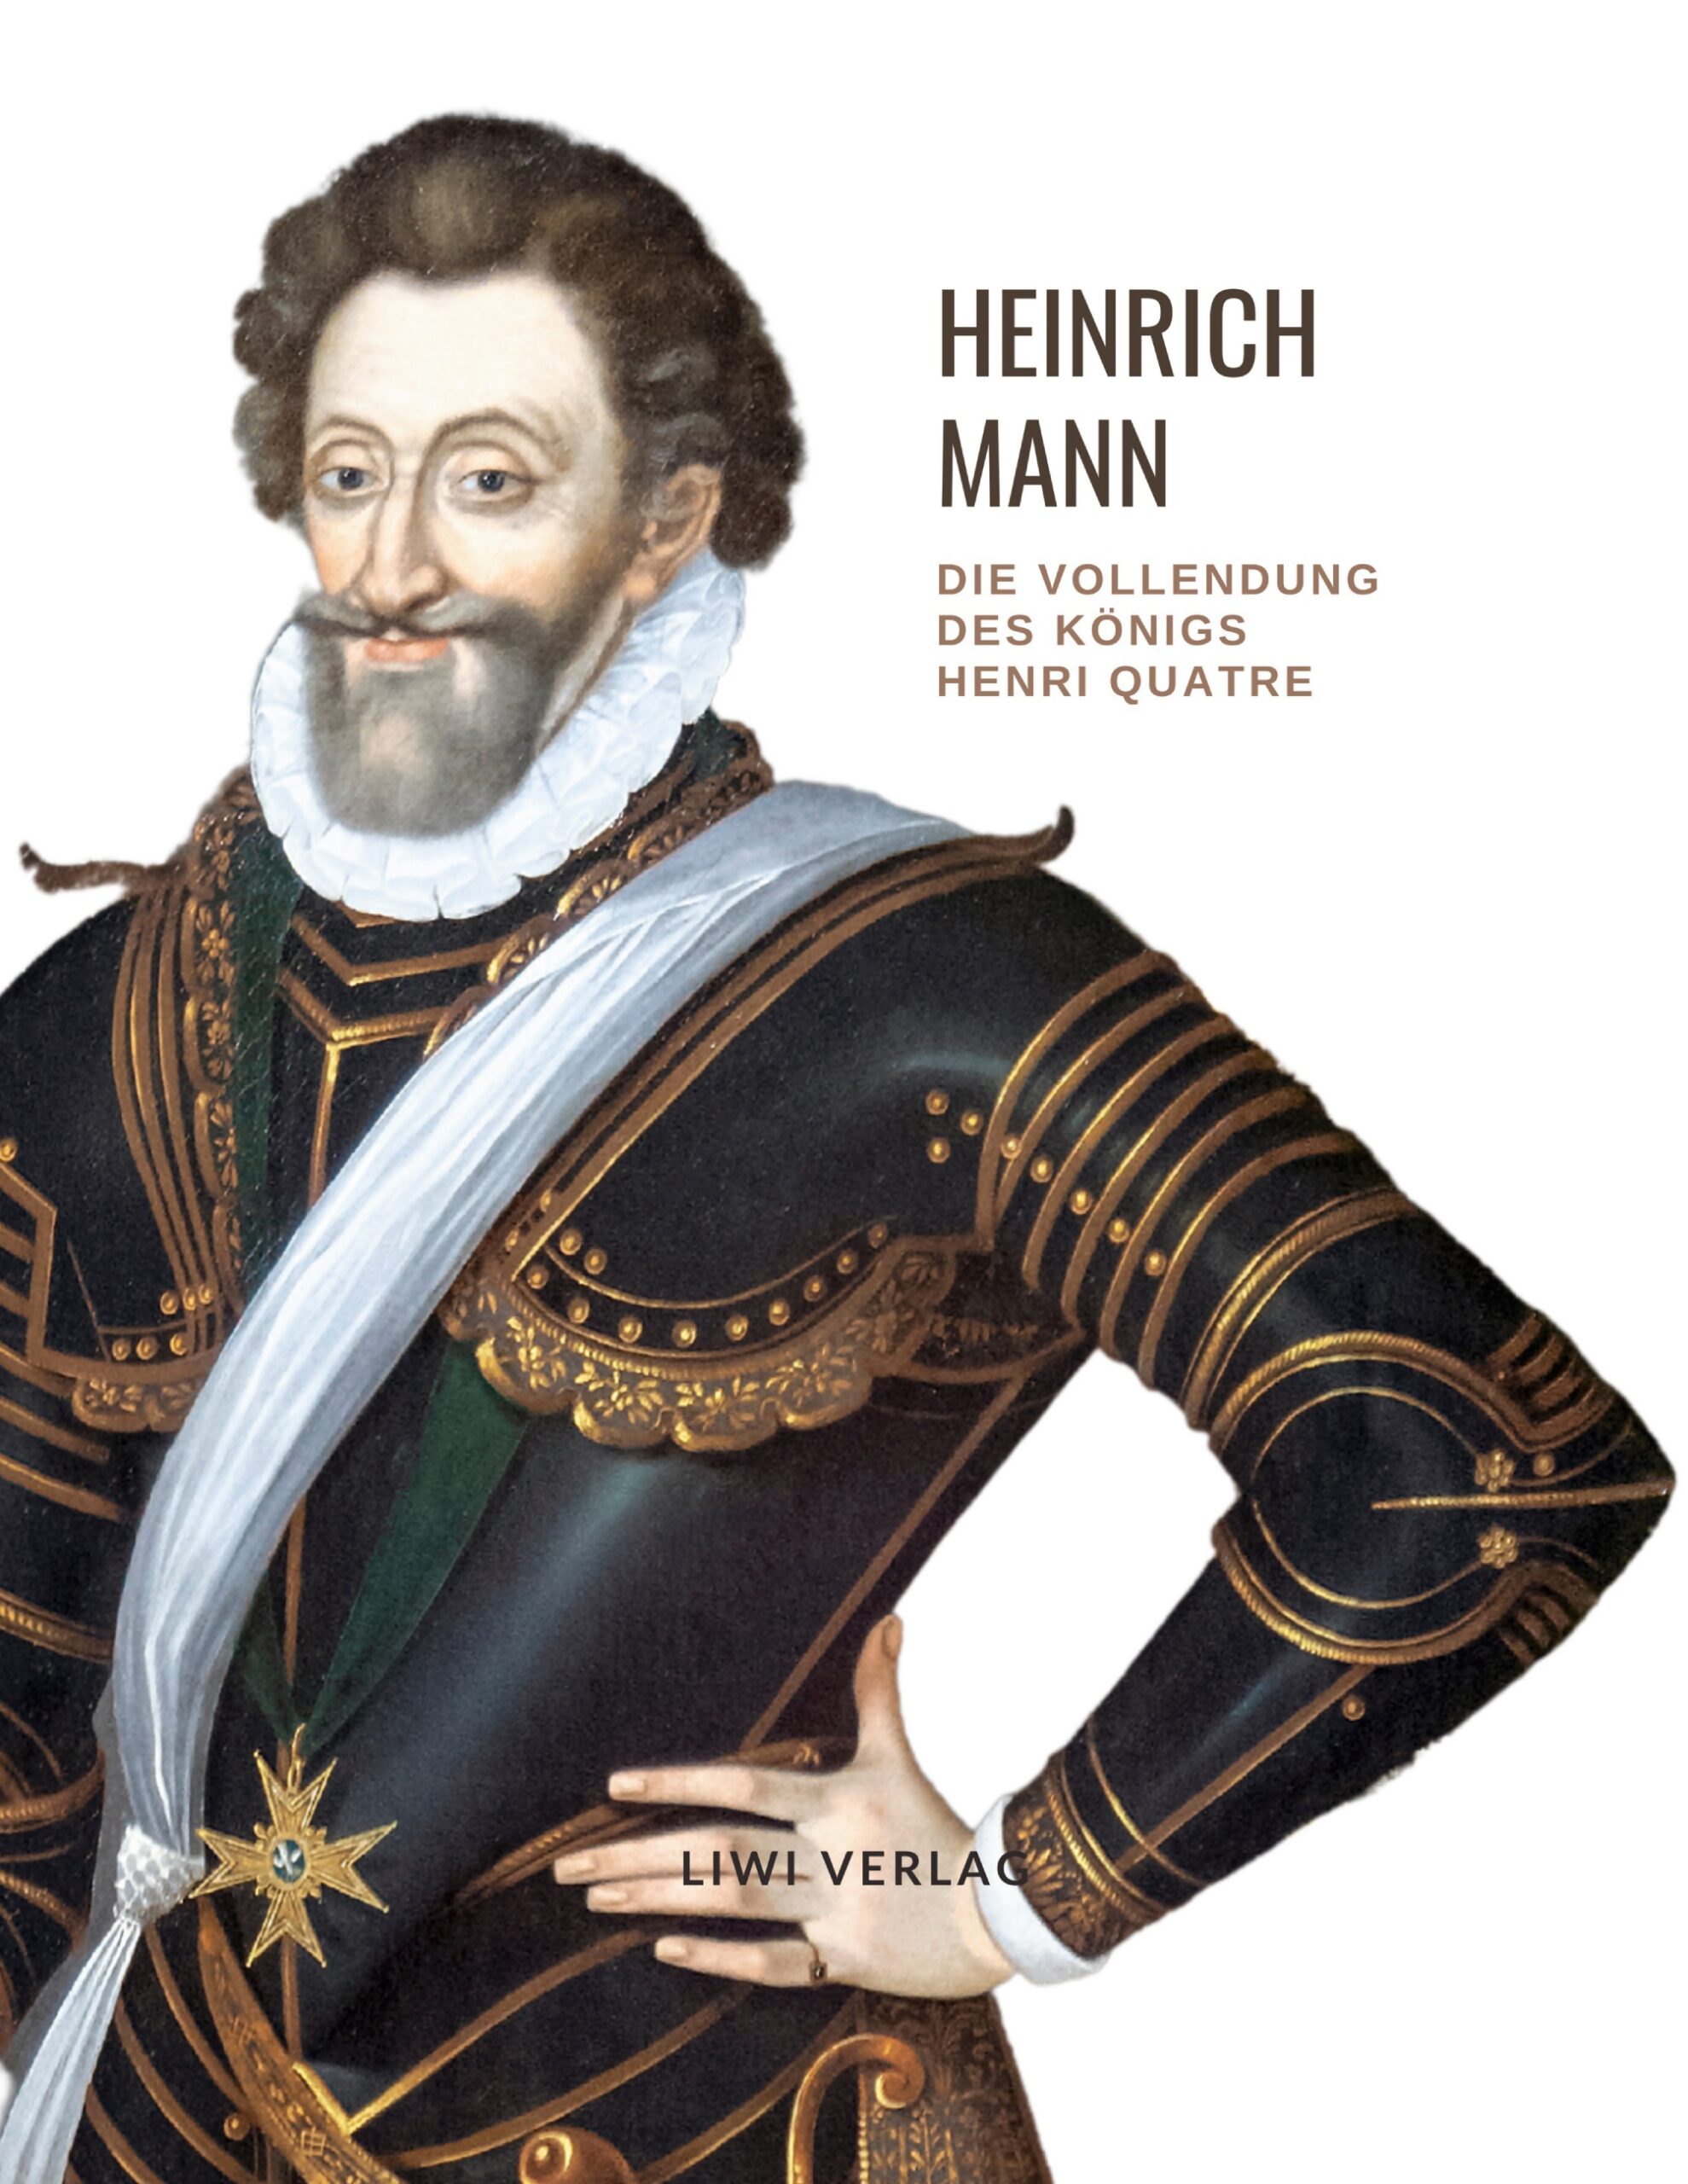 Heinrich Mann - Die Vollendung des Königs Henri Quatre